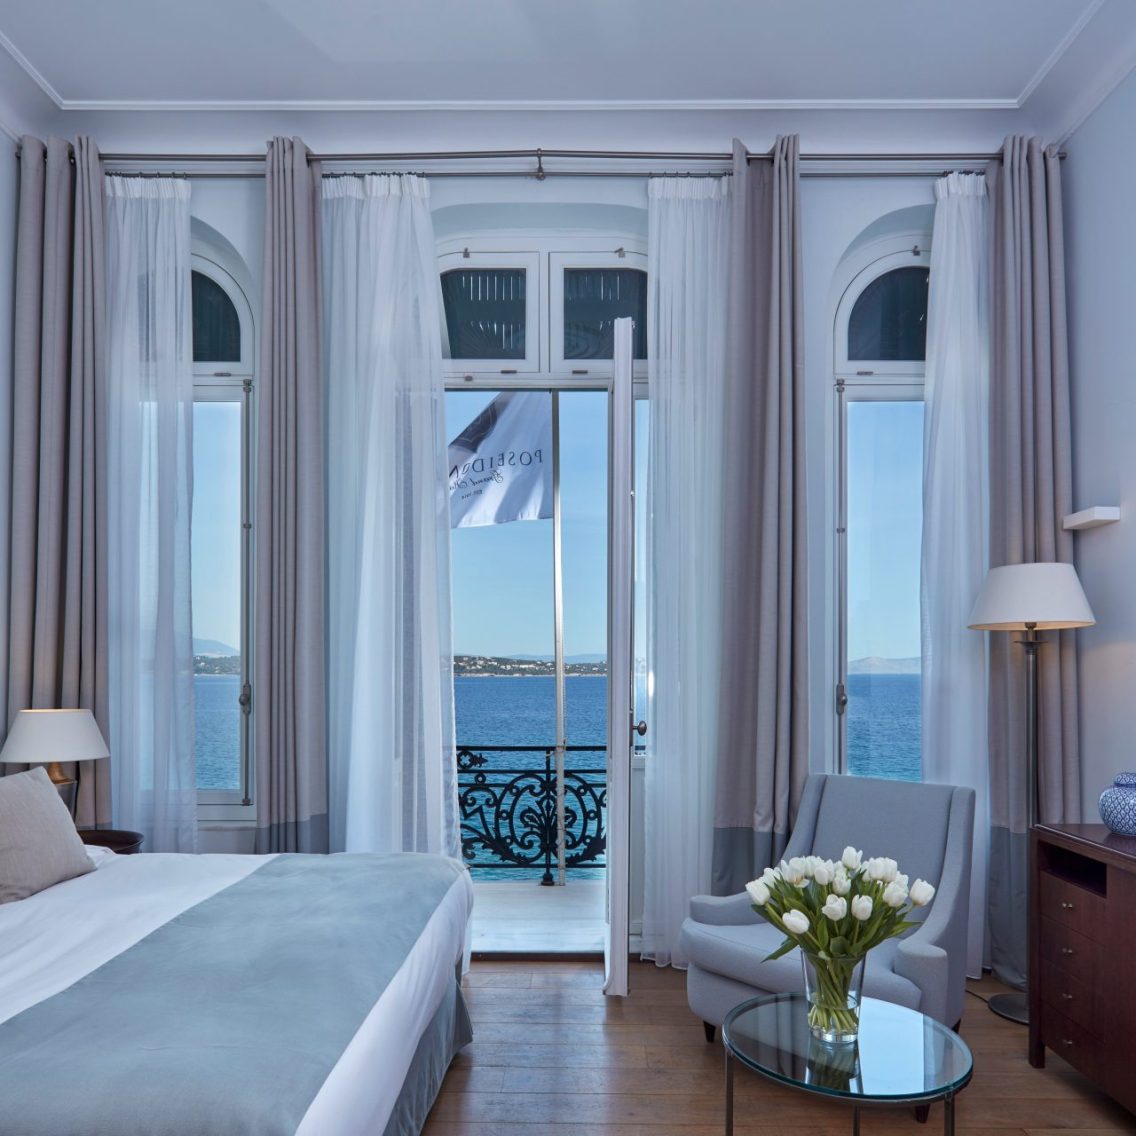 Το Poseidonion Grand Hotel γιορτάζει 110 χρόνια διαχρονικής φιλοξενίας